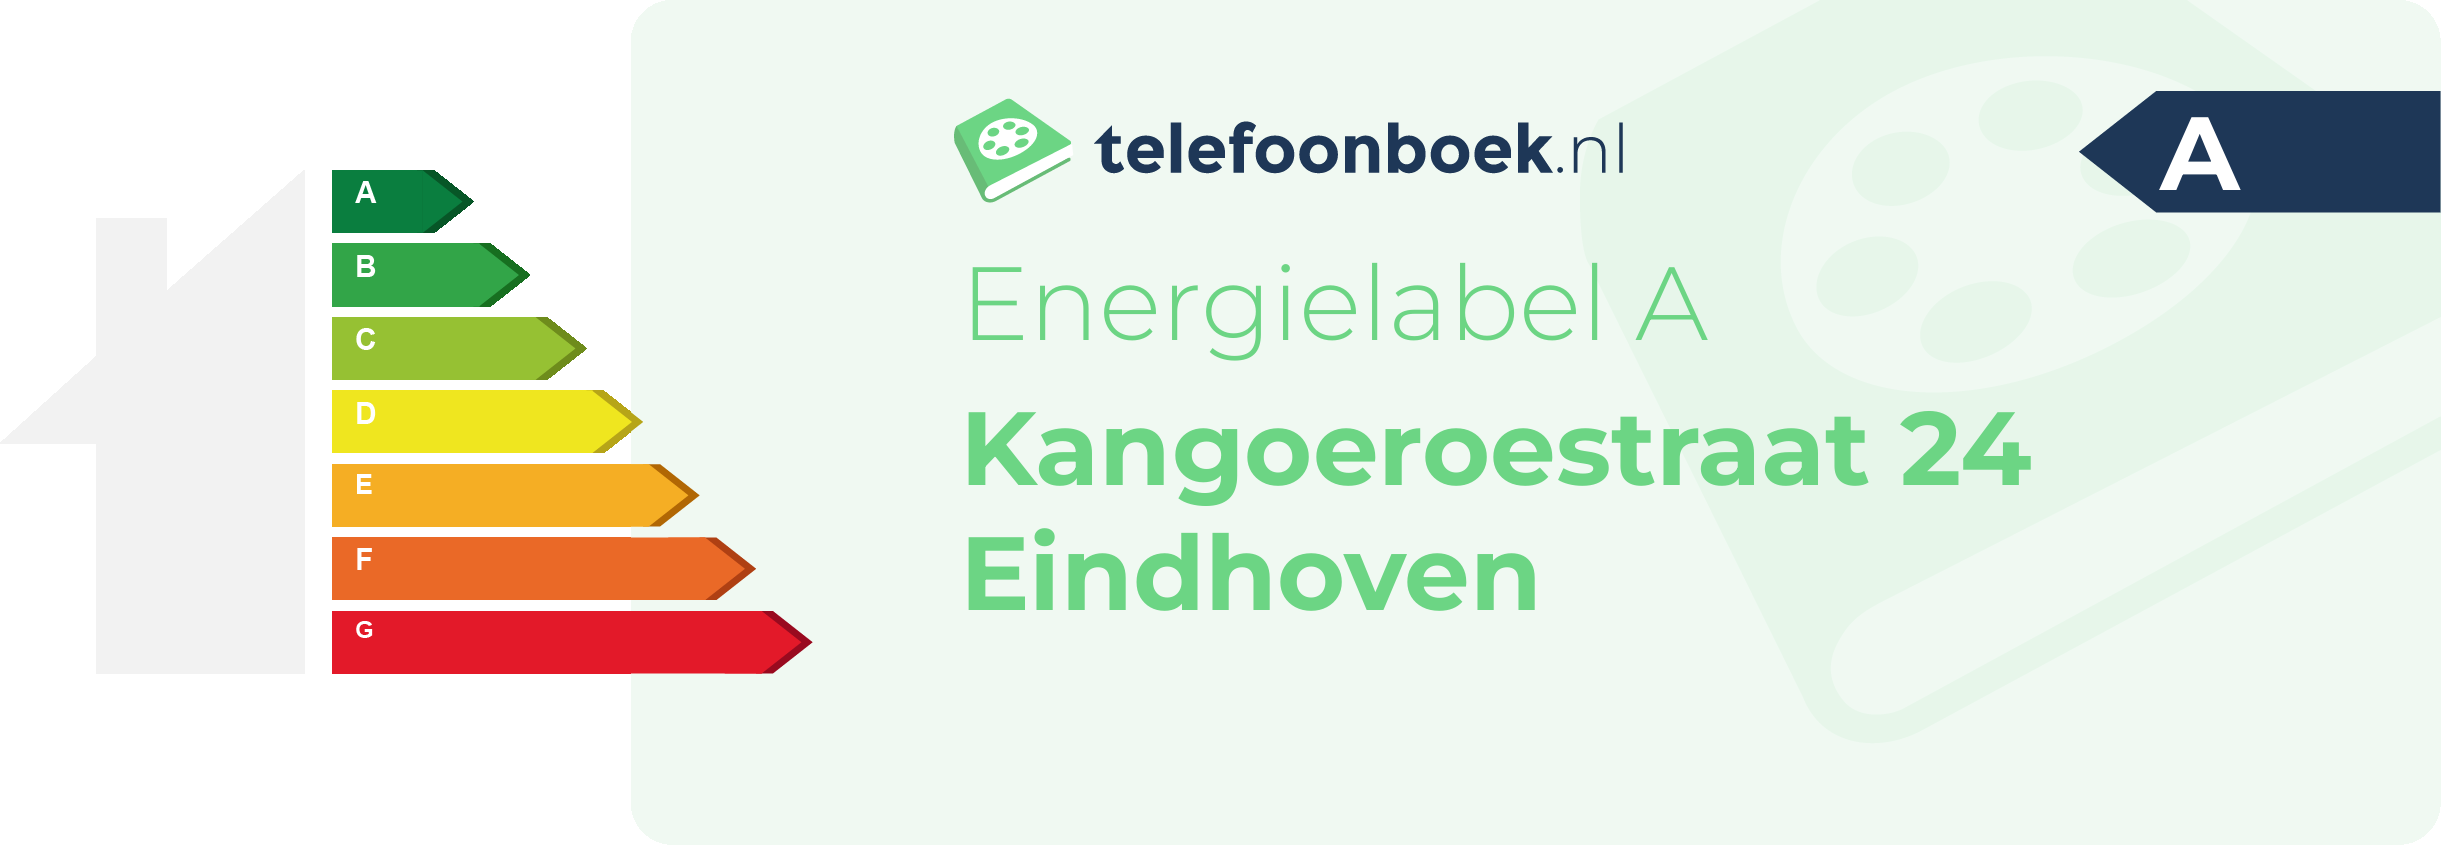 Energielabel Kangoeroestraat 24 Eindhoven